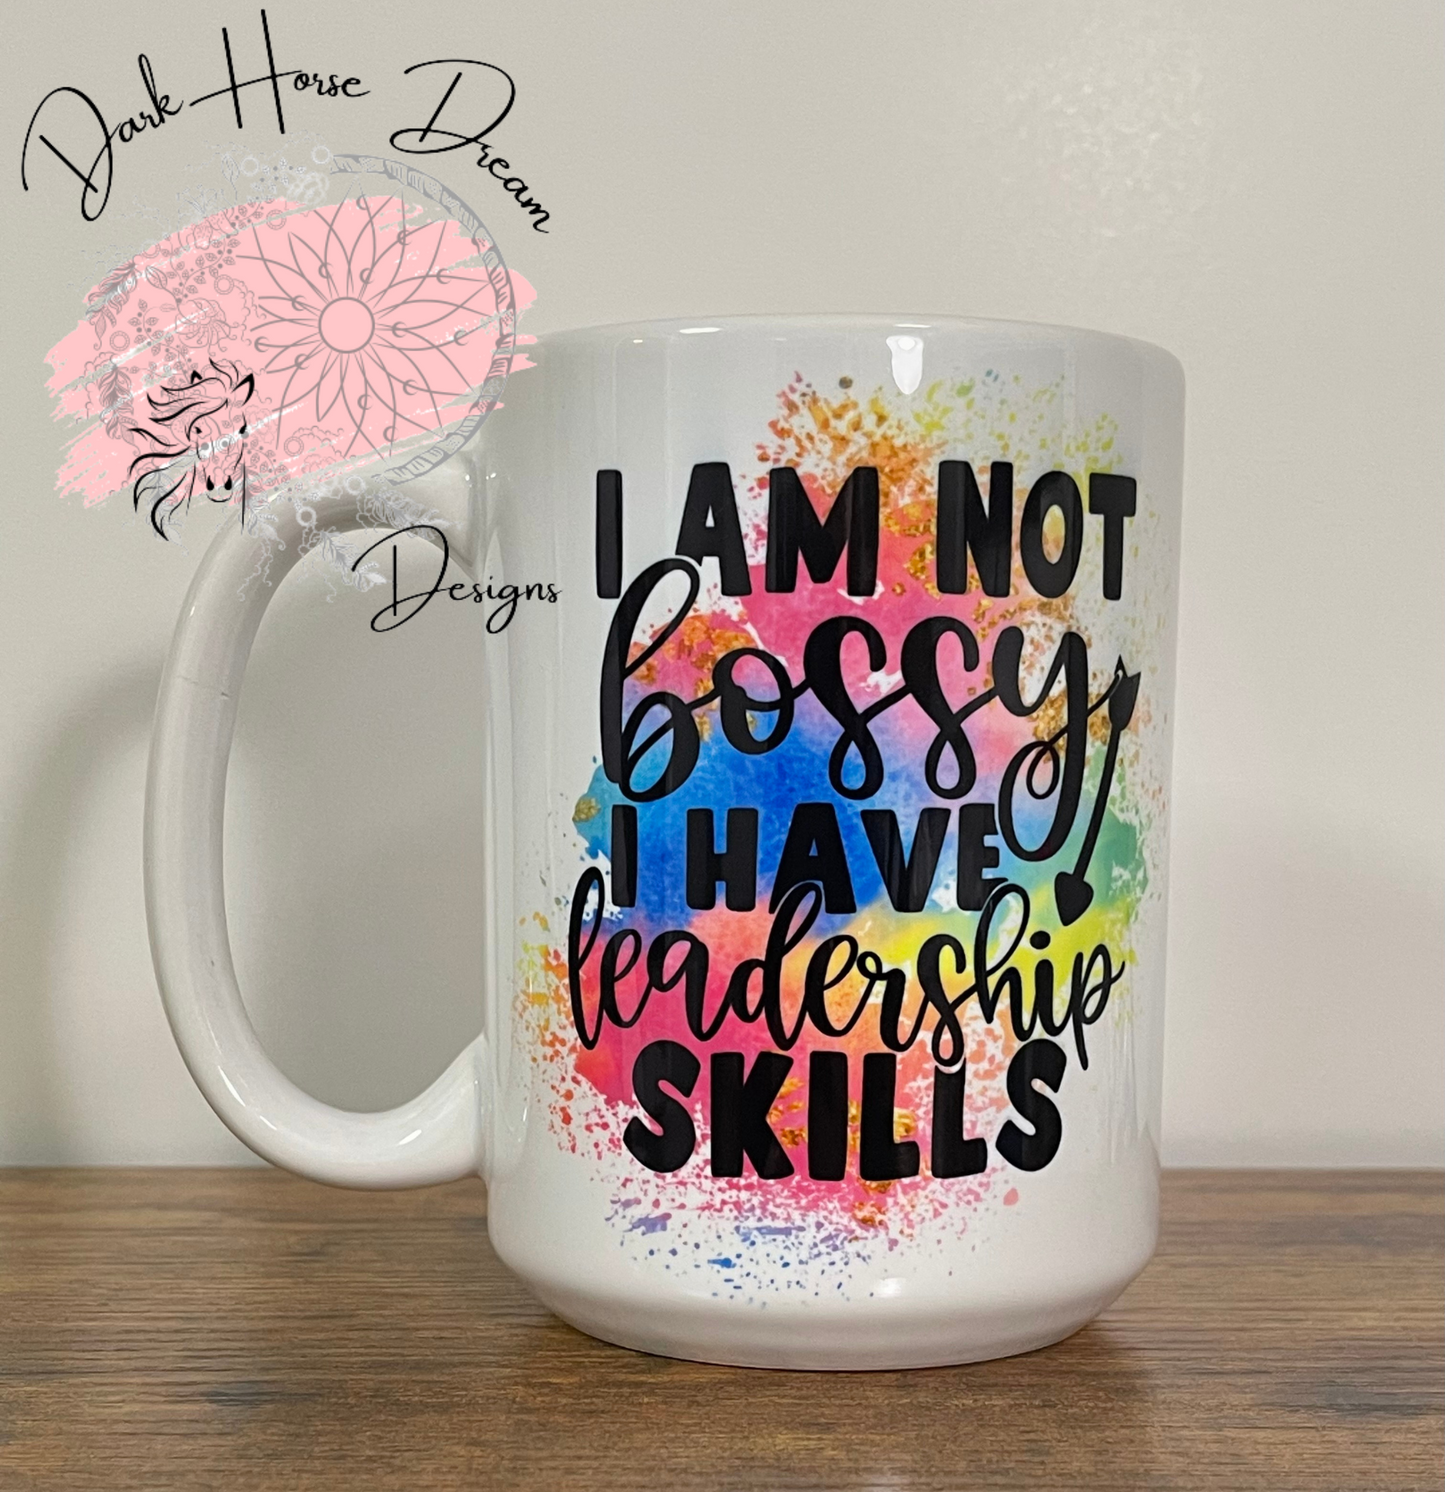 Leadership Skills - Clearance Mug